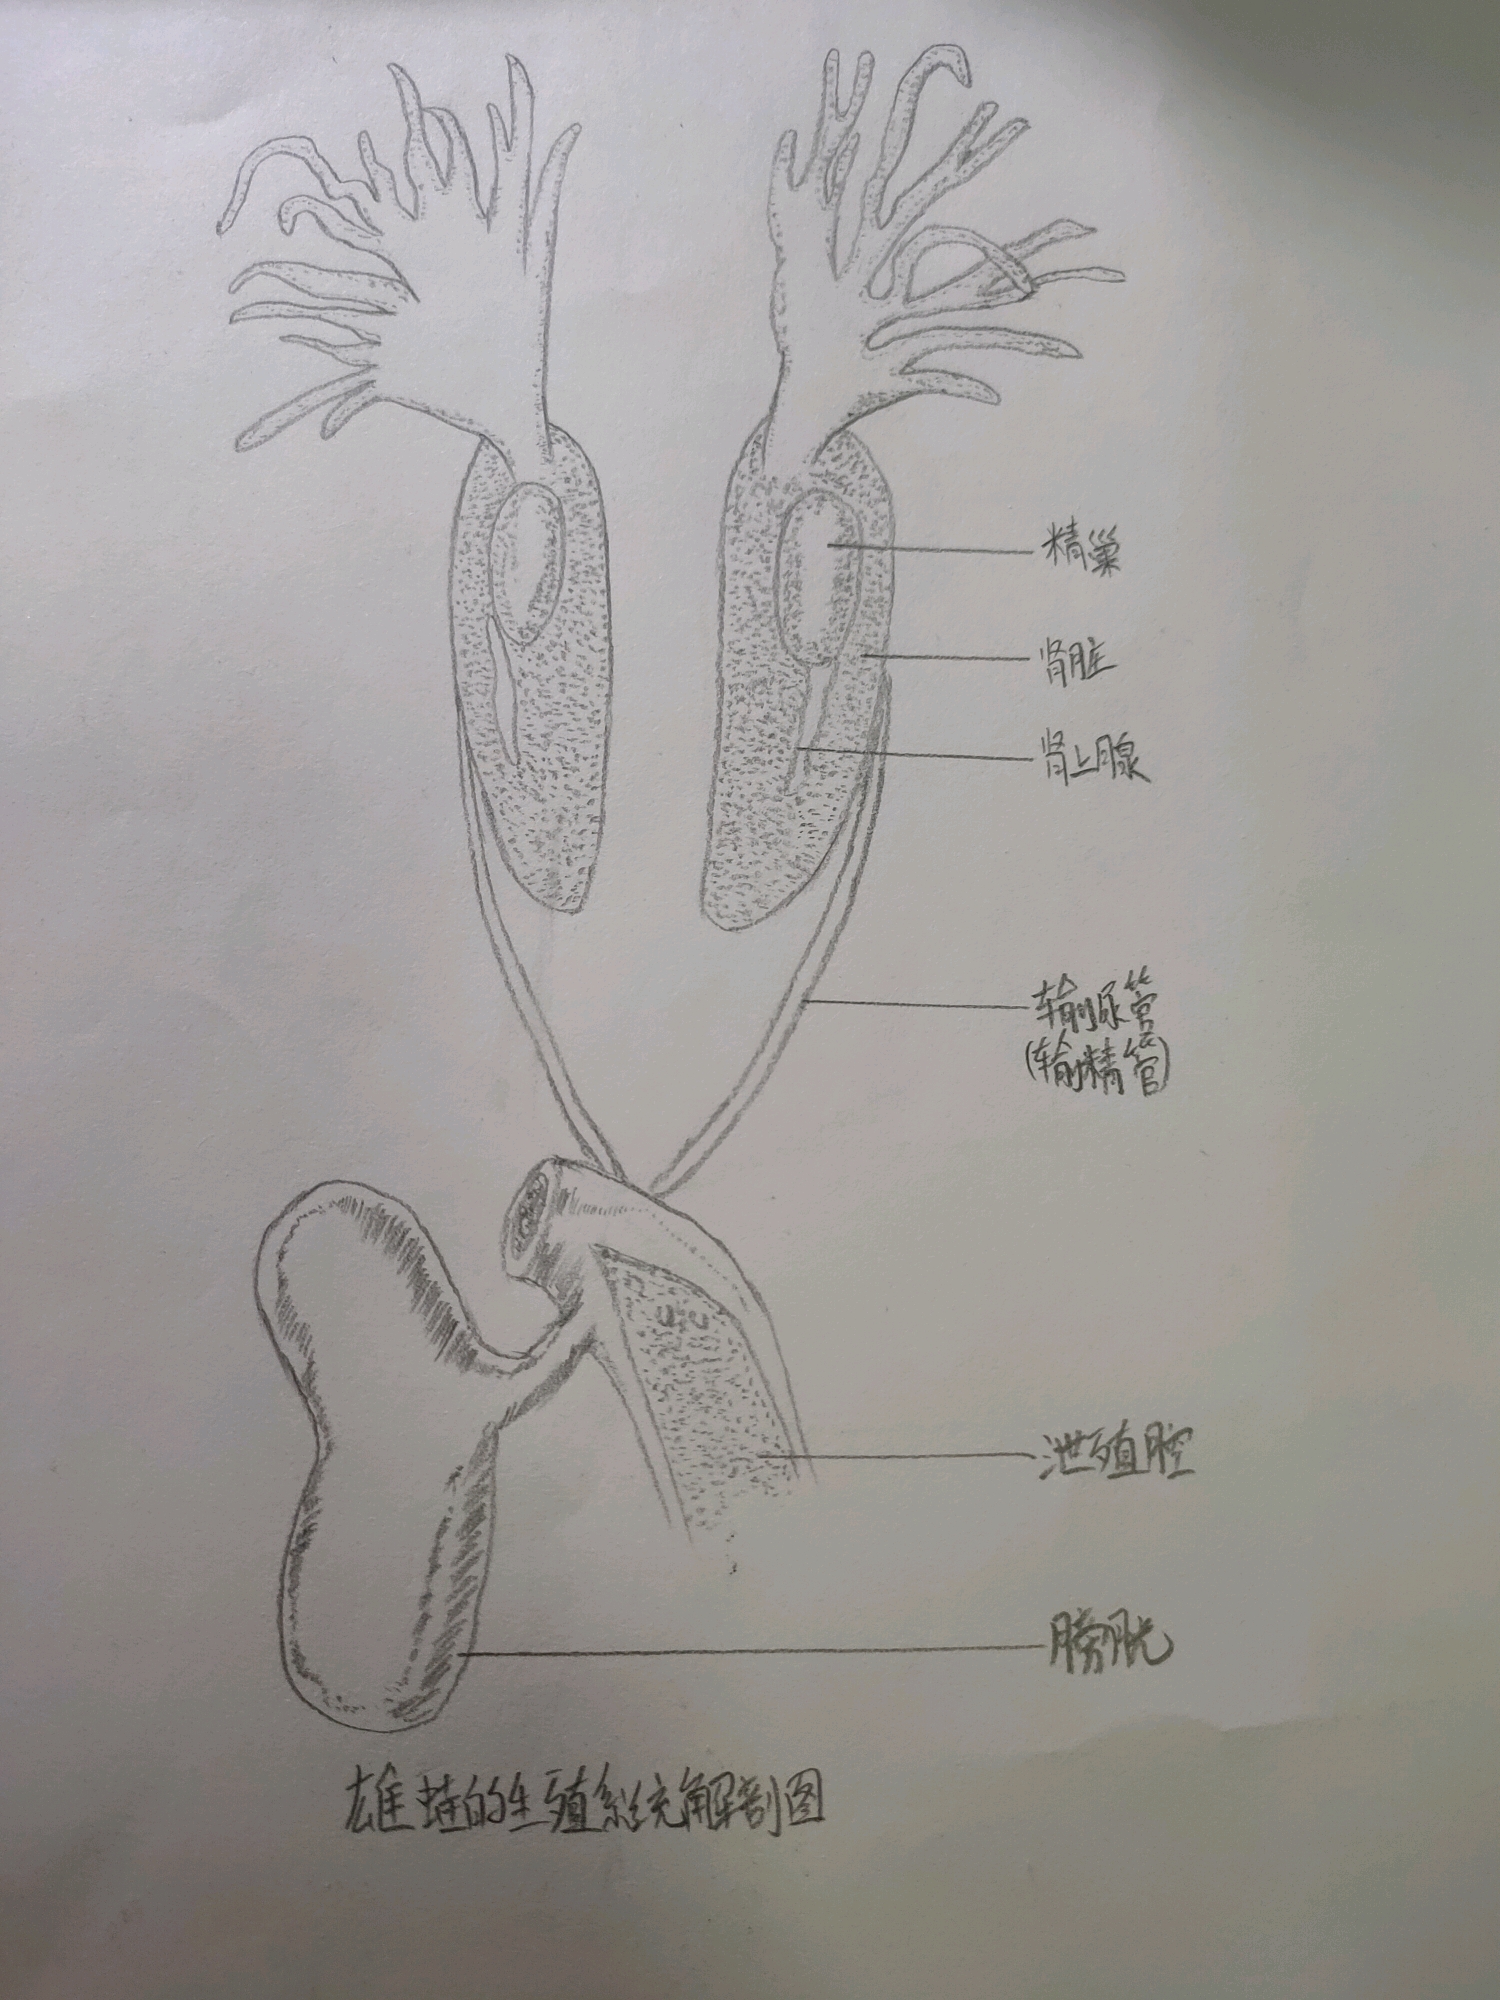 图版3-2 白蛉雄性外生殖器-医学昆虫-图片